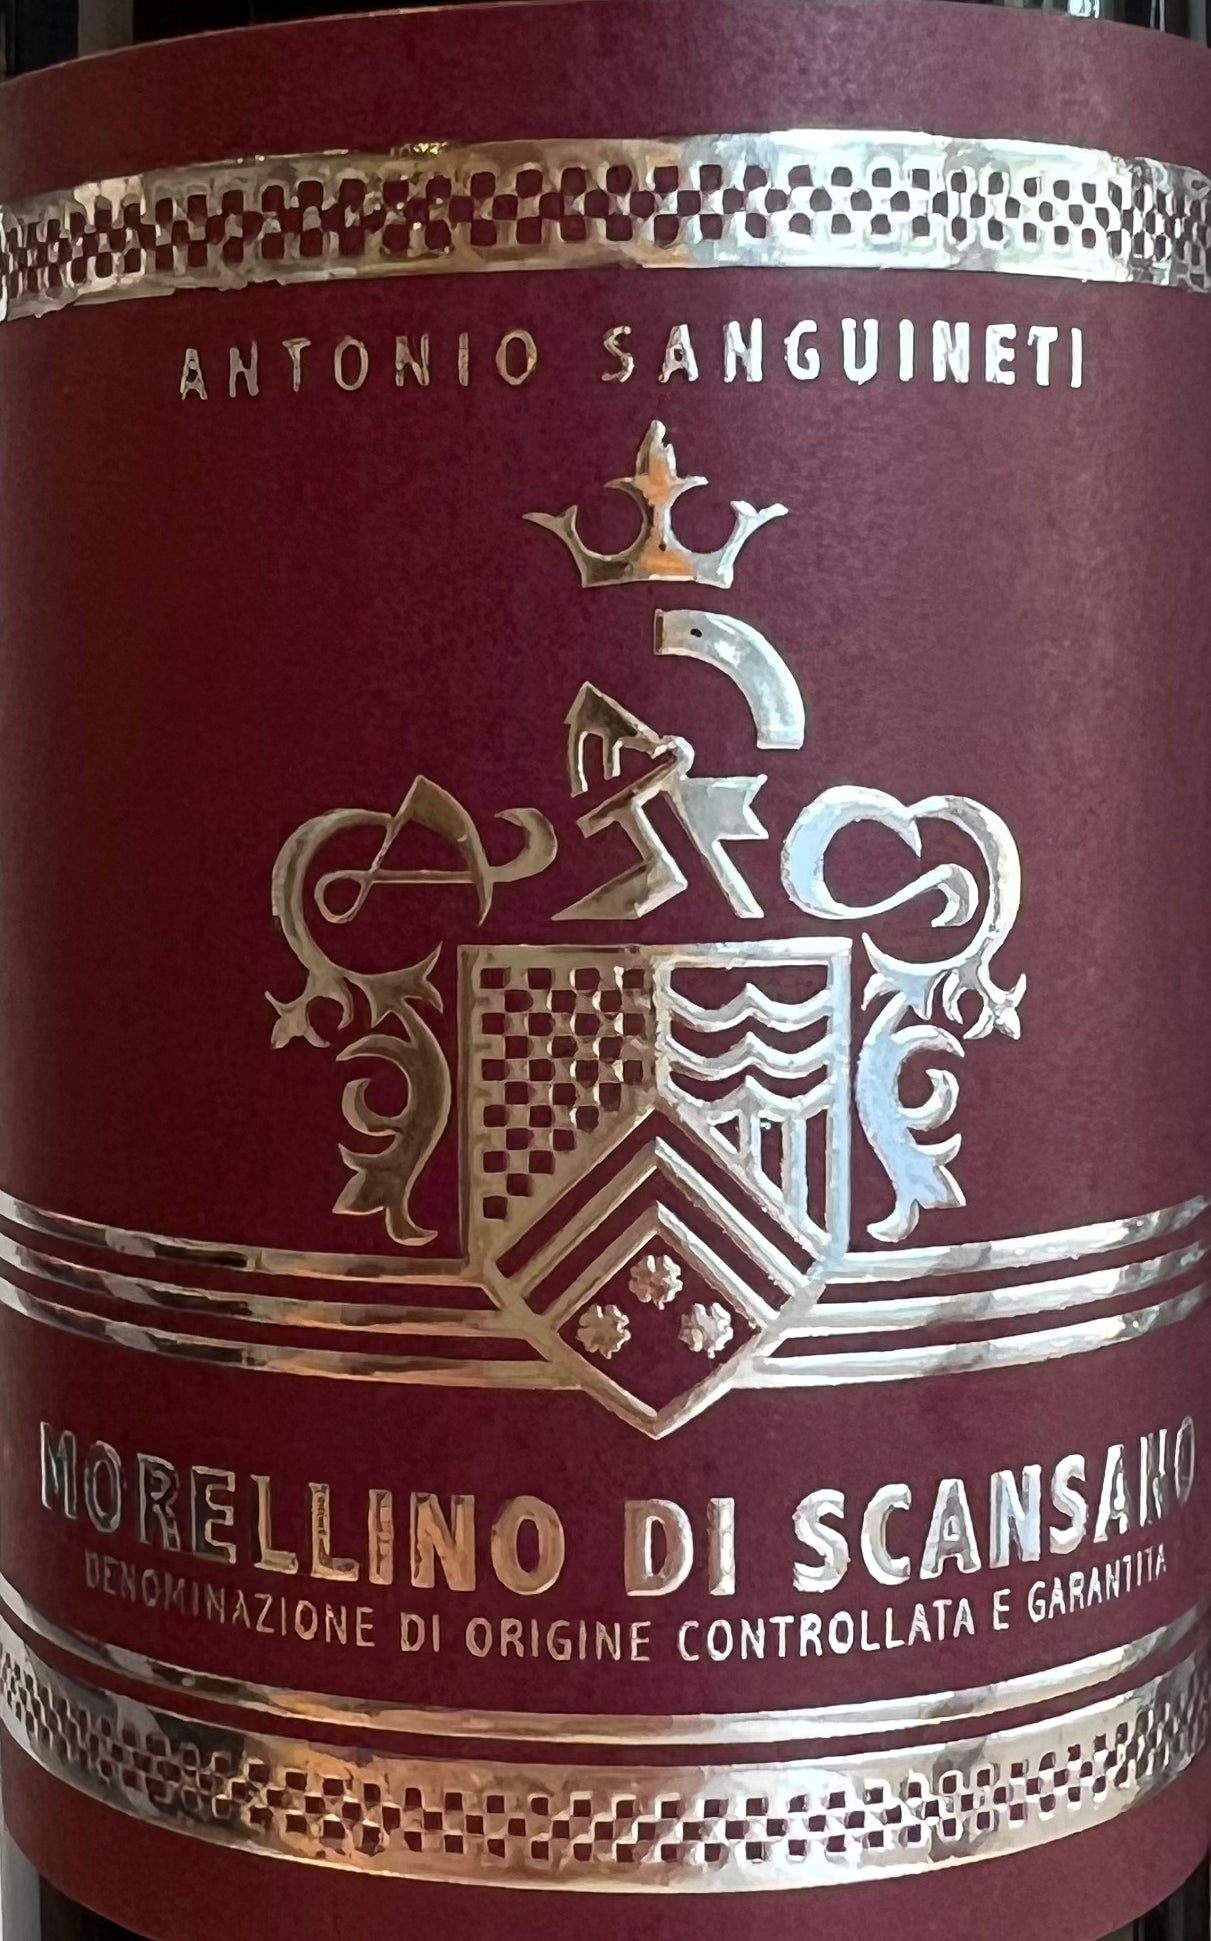 Antonio Sanguineti - Morellino di Scansano